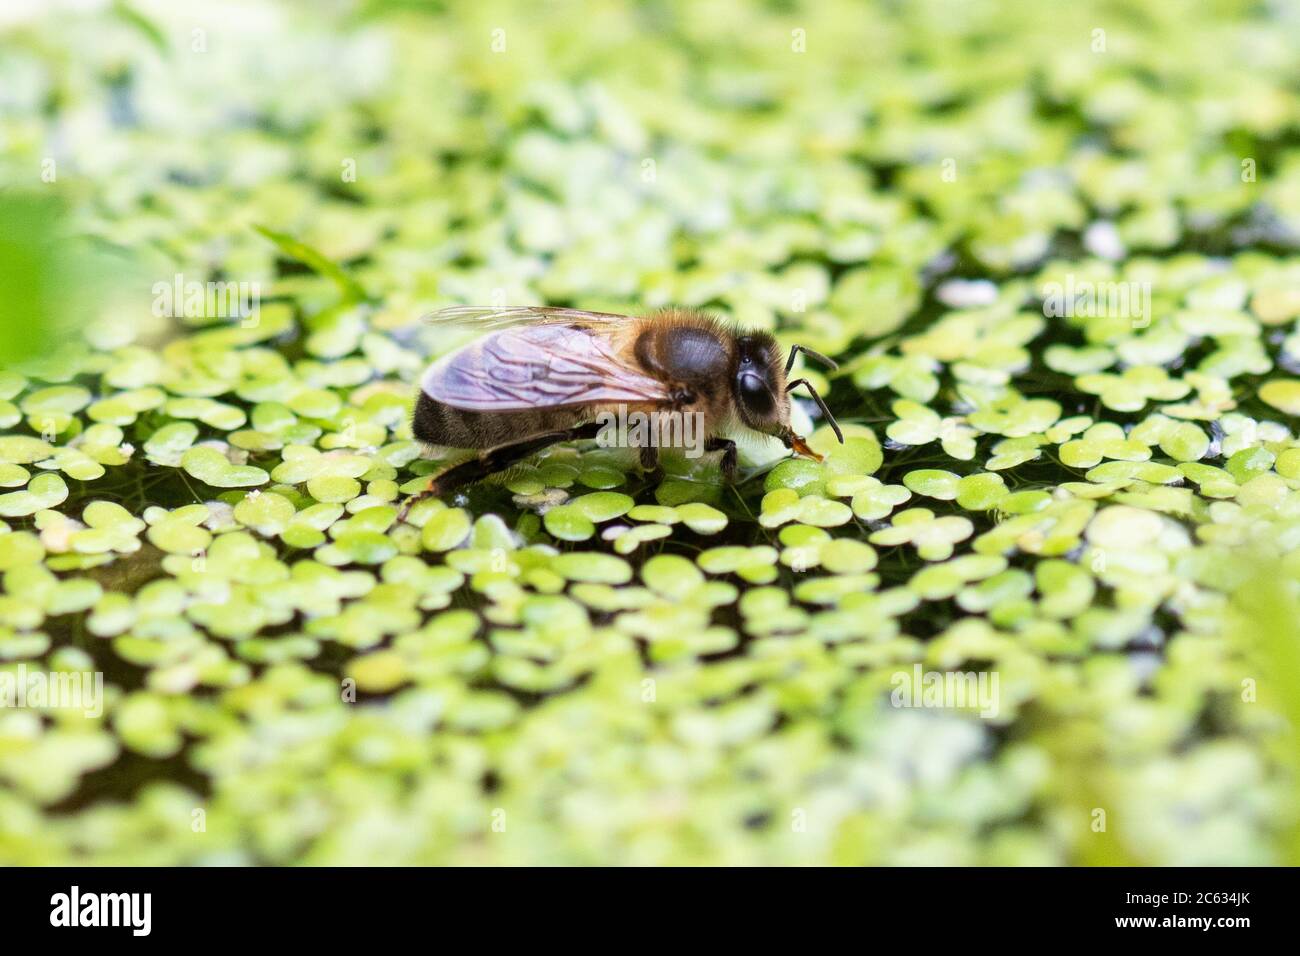 Abeille - apis mellifera - eau potable de l'étang de flétrissement du jardin recouvert de duckweed - Écosse, Royaume-Uni Banque D'Images